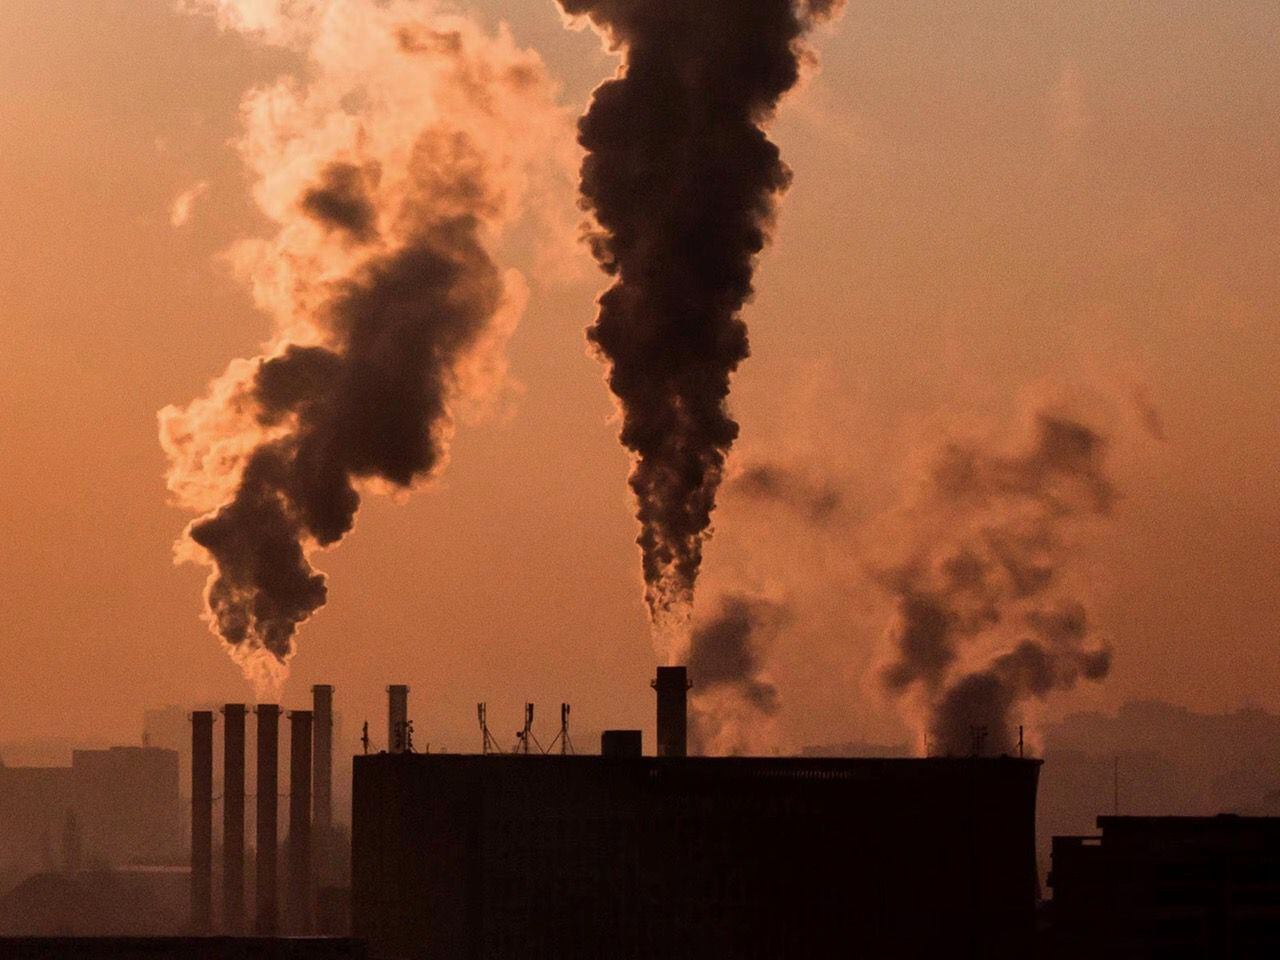 Descarbonizar o no descarbonizar, esa es la política pública